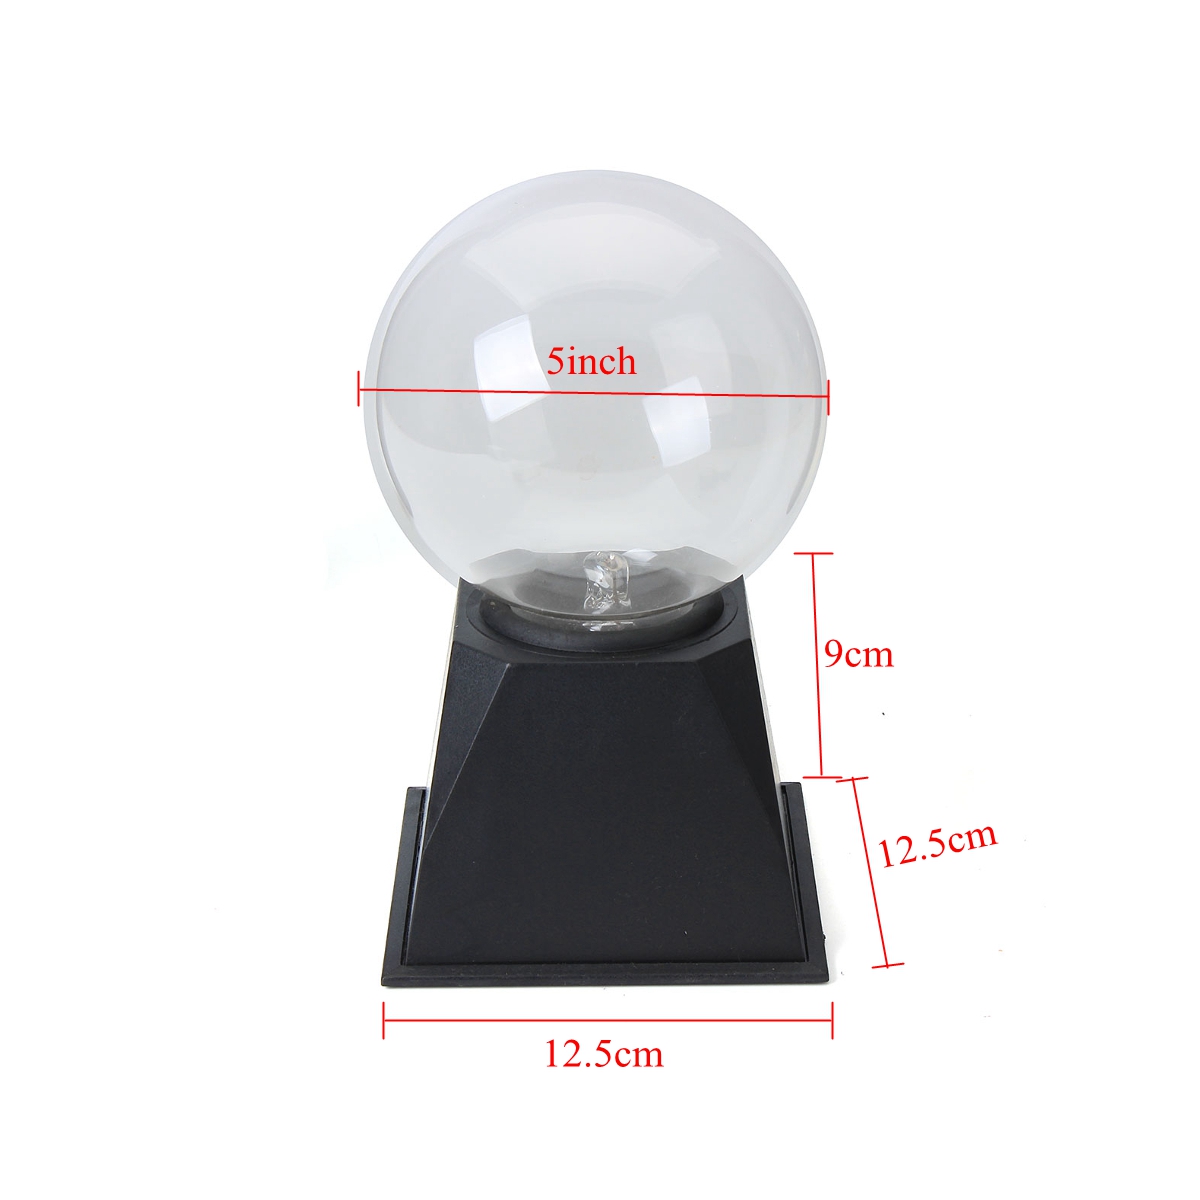 4568-Inches-Plasma-Ball-Sphere-Light-Crystal-Light-Magic-Desk-Lamp-Novelty-Light-Home-Decor-1446931